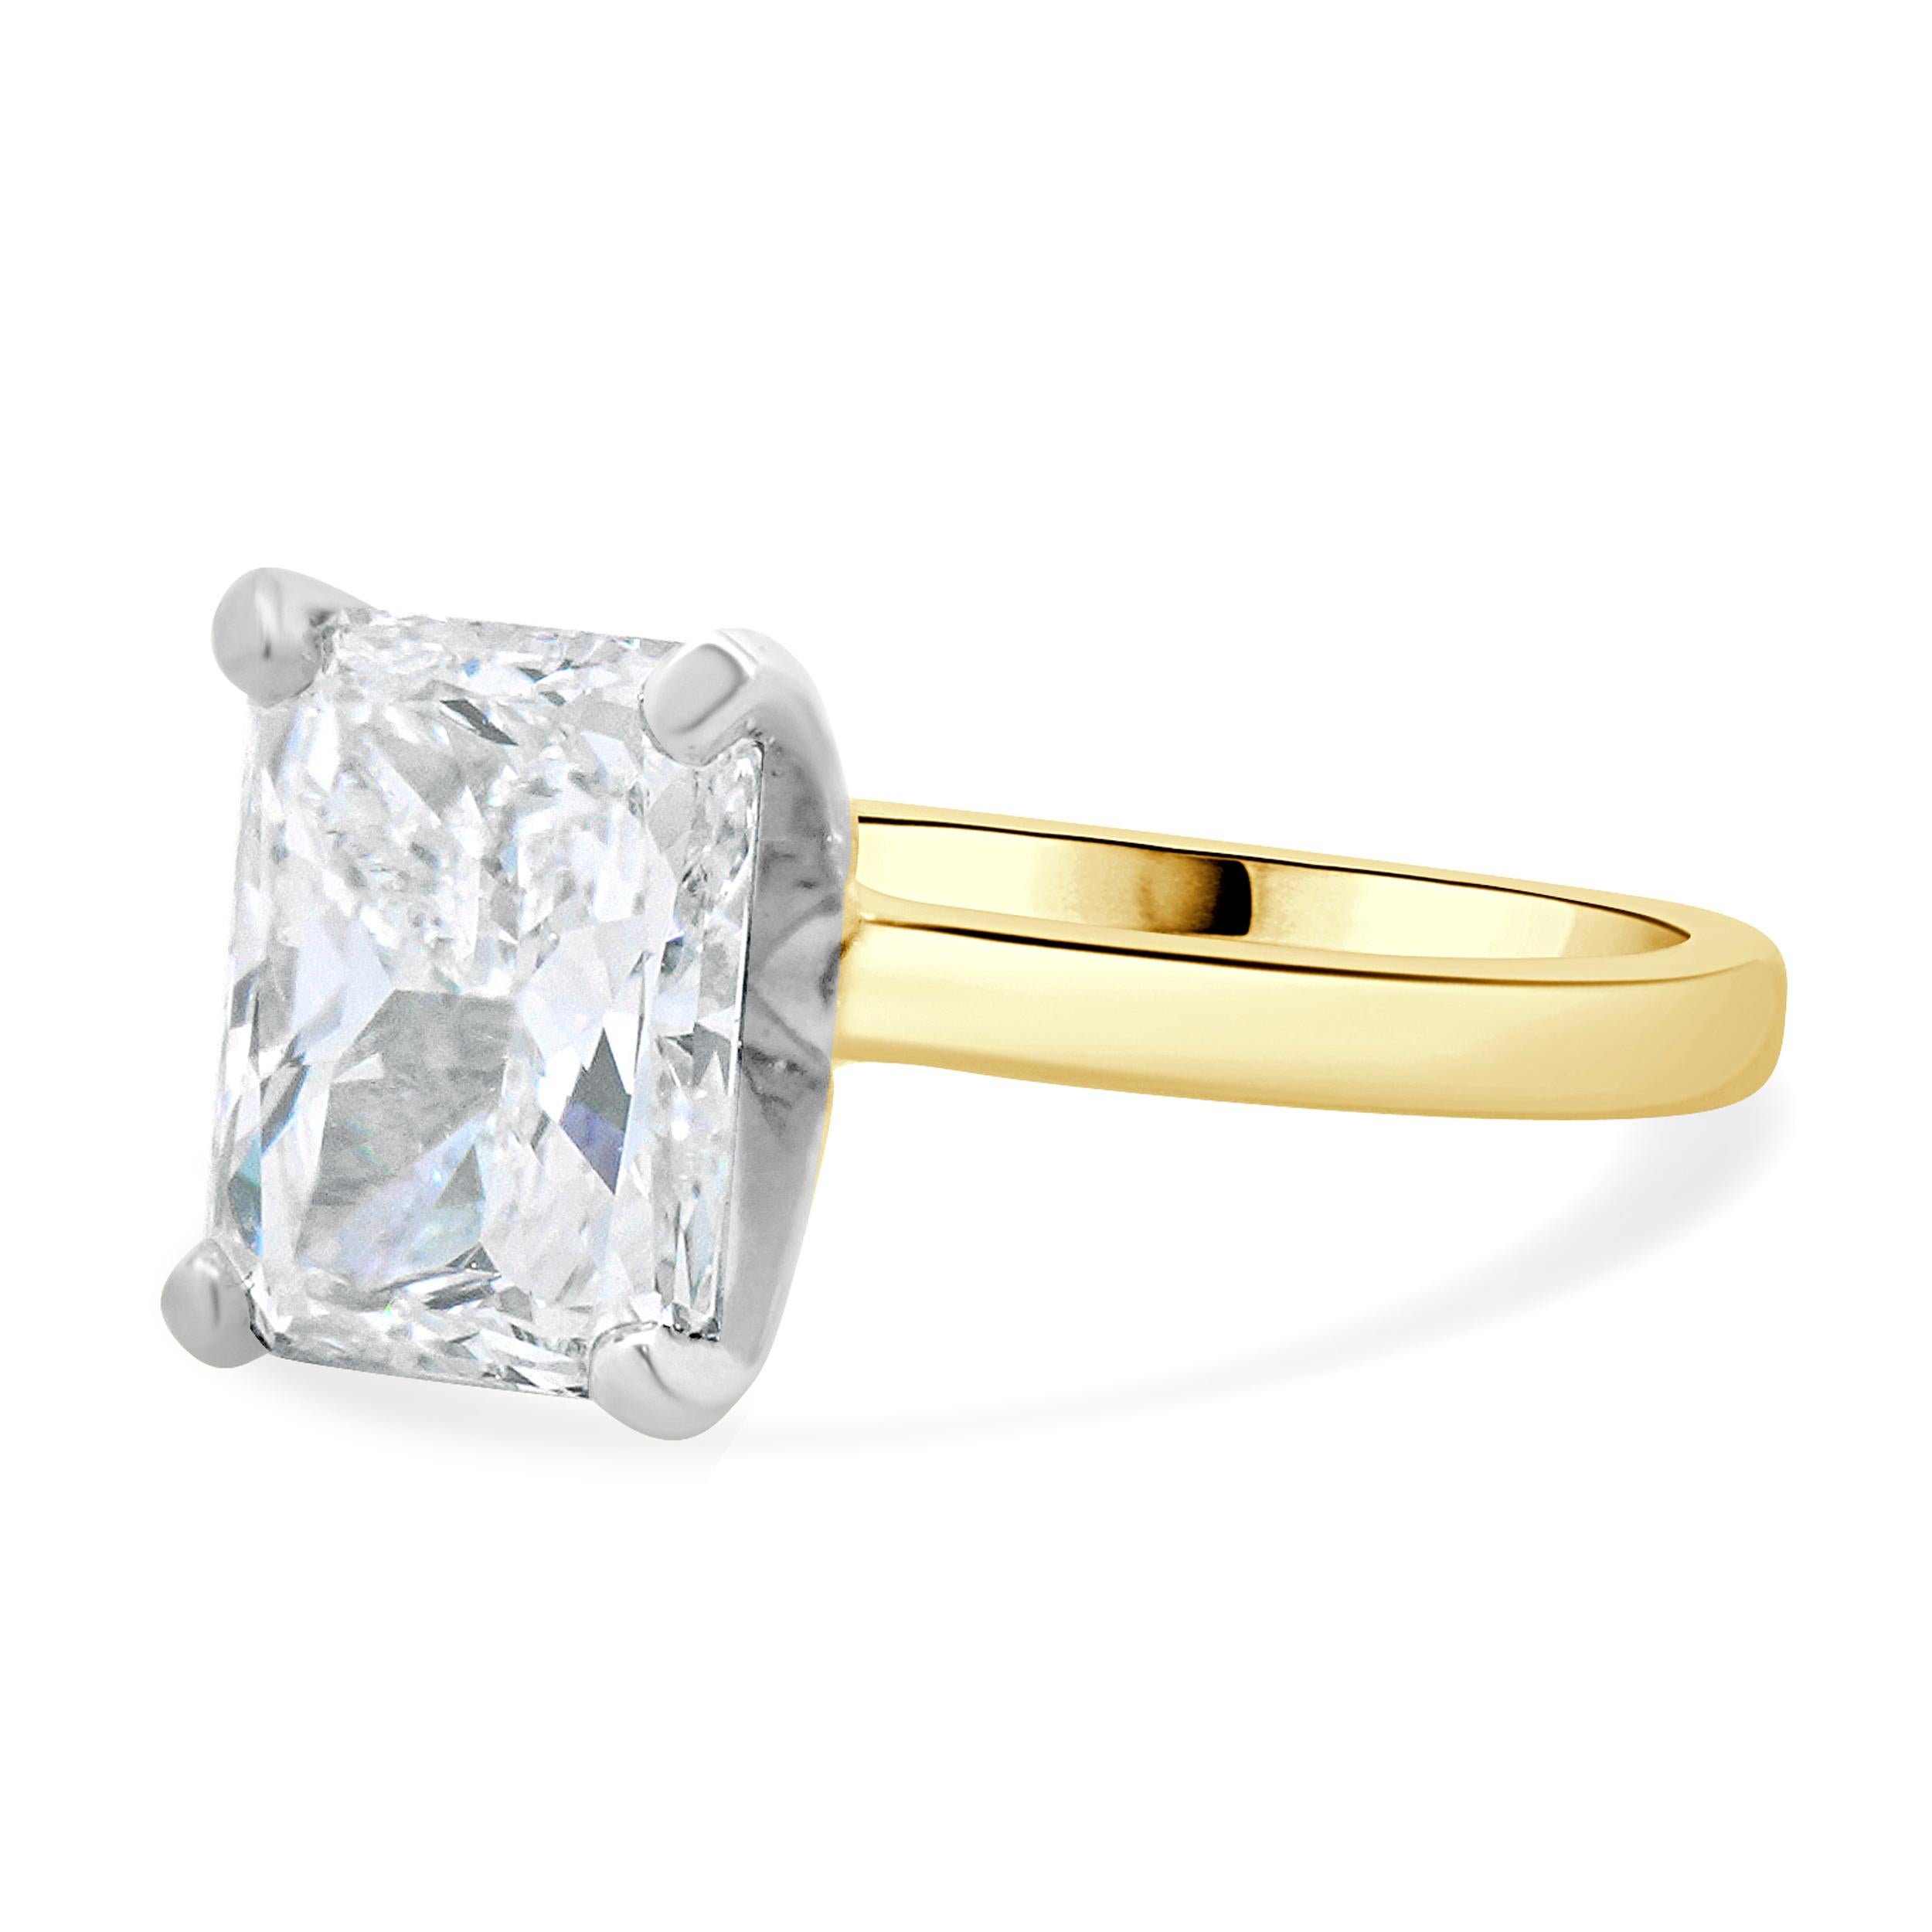 Design/One Kabana
MATERIAL : Or jaune et blanc 14K
Diamant : 1 taille radiant =2.77ct
Couleur : F
Clarté : SI2
GIA : 11221819
Dimensions : la partie supérieure de l'anneau mesure 10 mm de large
Taille de la bague : 5 (taille complémentaire